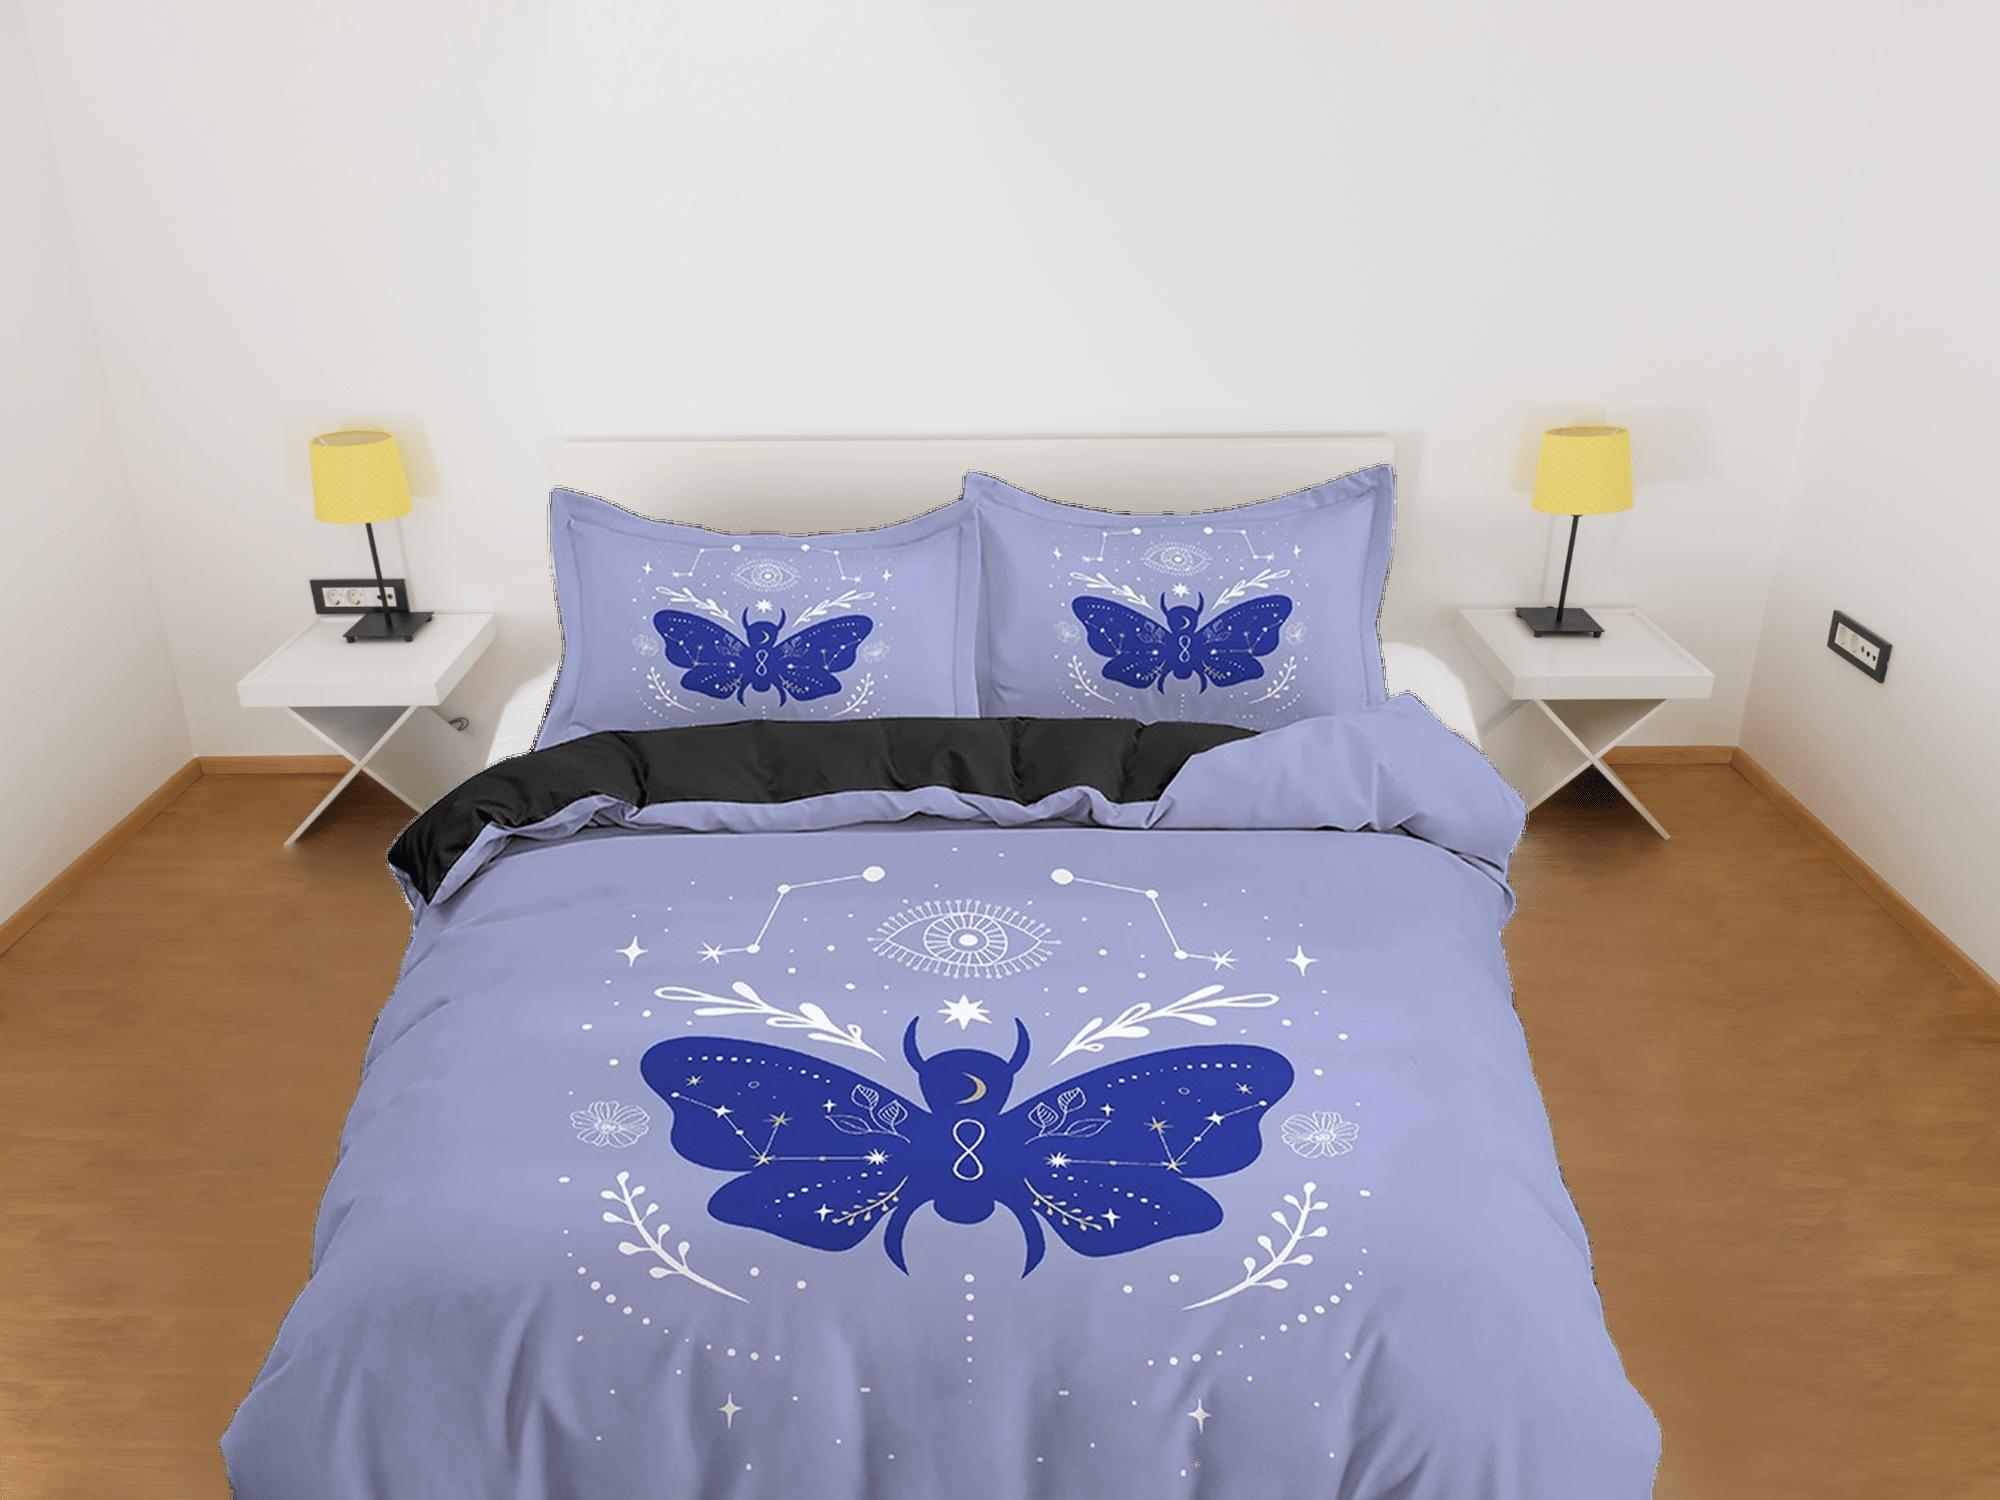 daintyduvet Purple Blue Boho Bedding with Moth and Stars, Celestial Dorm Bedding, Duvet Cover Set, Aesthetic Duvet Cover King Queen Full Twin Single